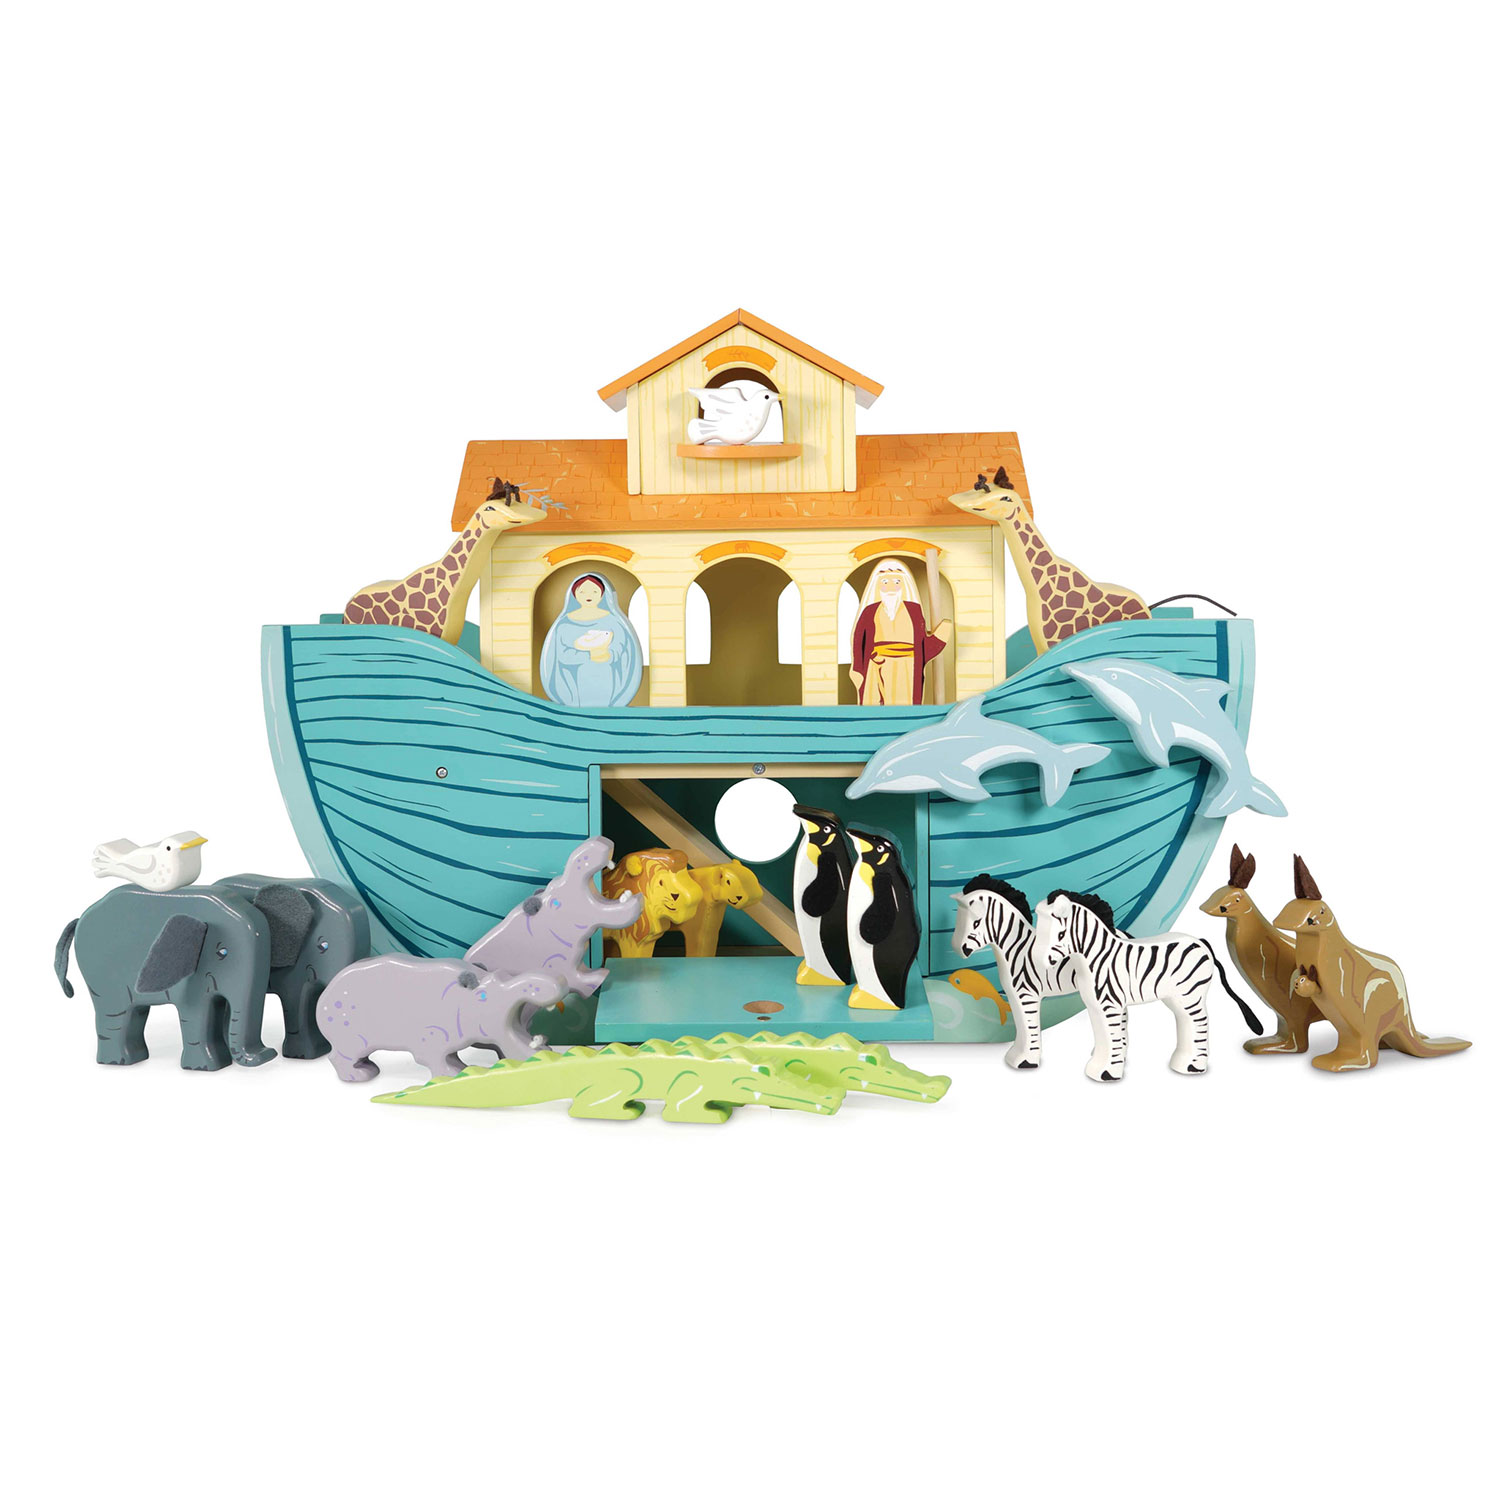 Die große Arche / The Great Ark Noah - 2023